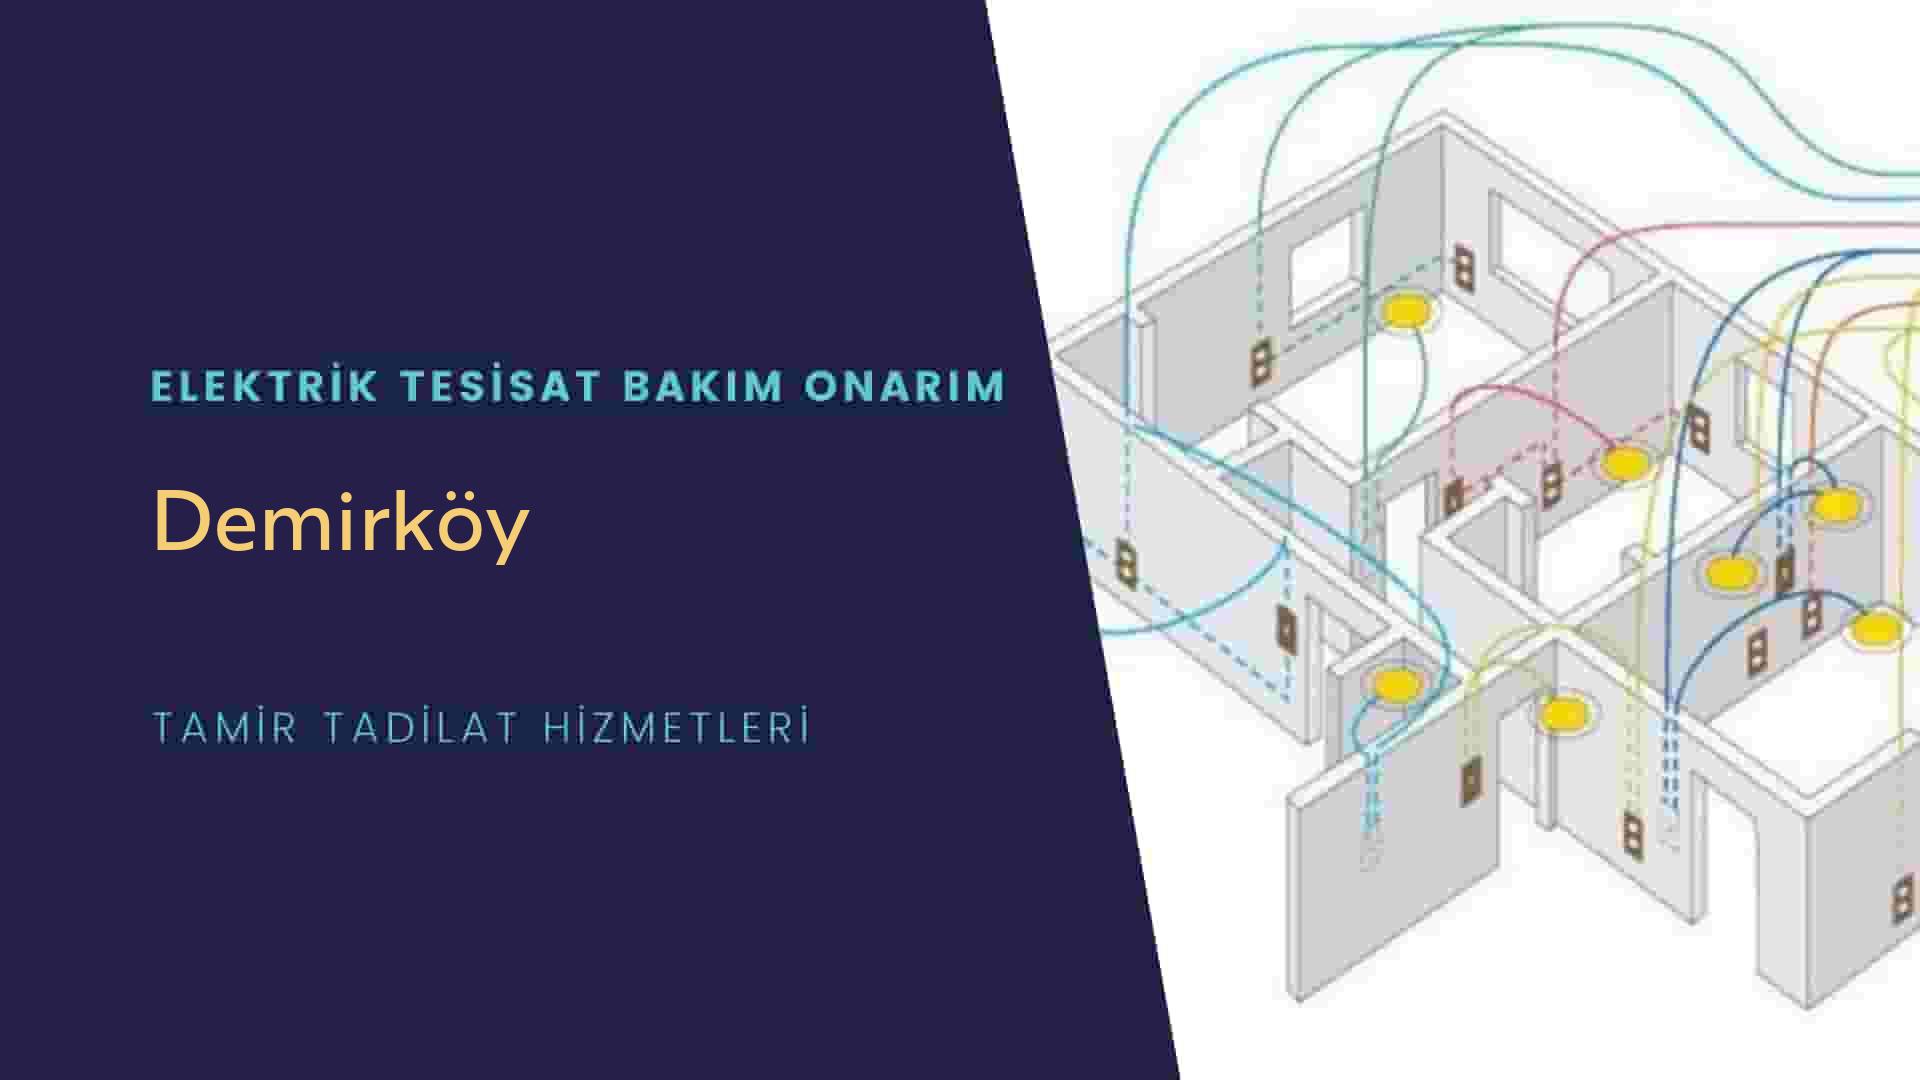 Demirköy'de elektrik tesisatı ustalarımı arıyorsunuz doğru adrestenizi Demirköy elektrik tesisatı ustalarımız 7/24 sizlere hizmet vermekten mutluluk duyar.